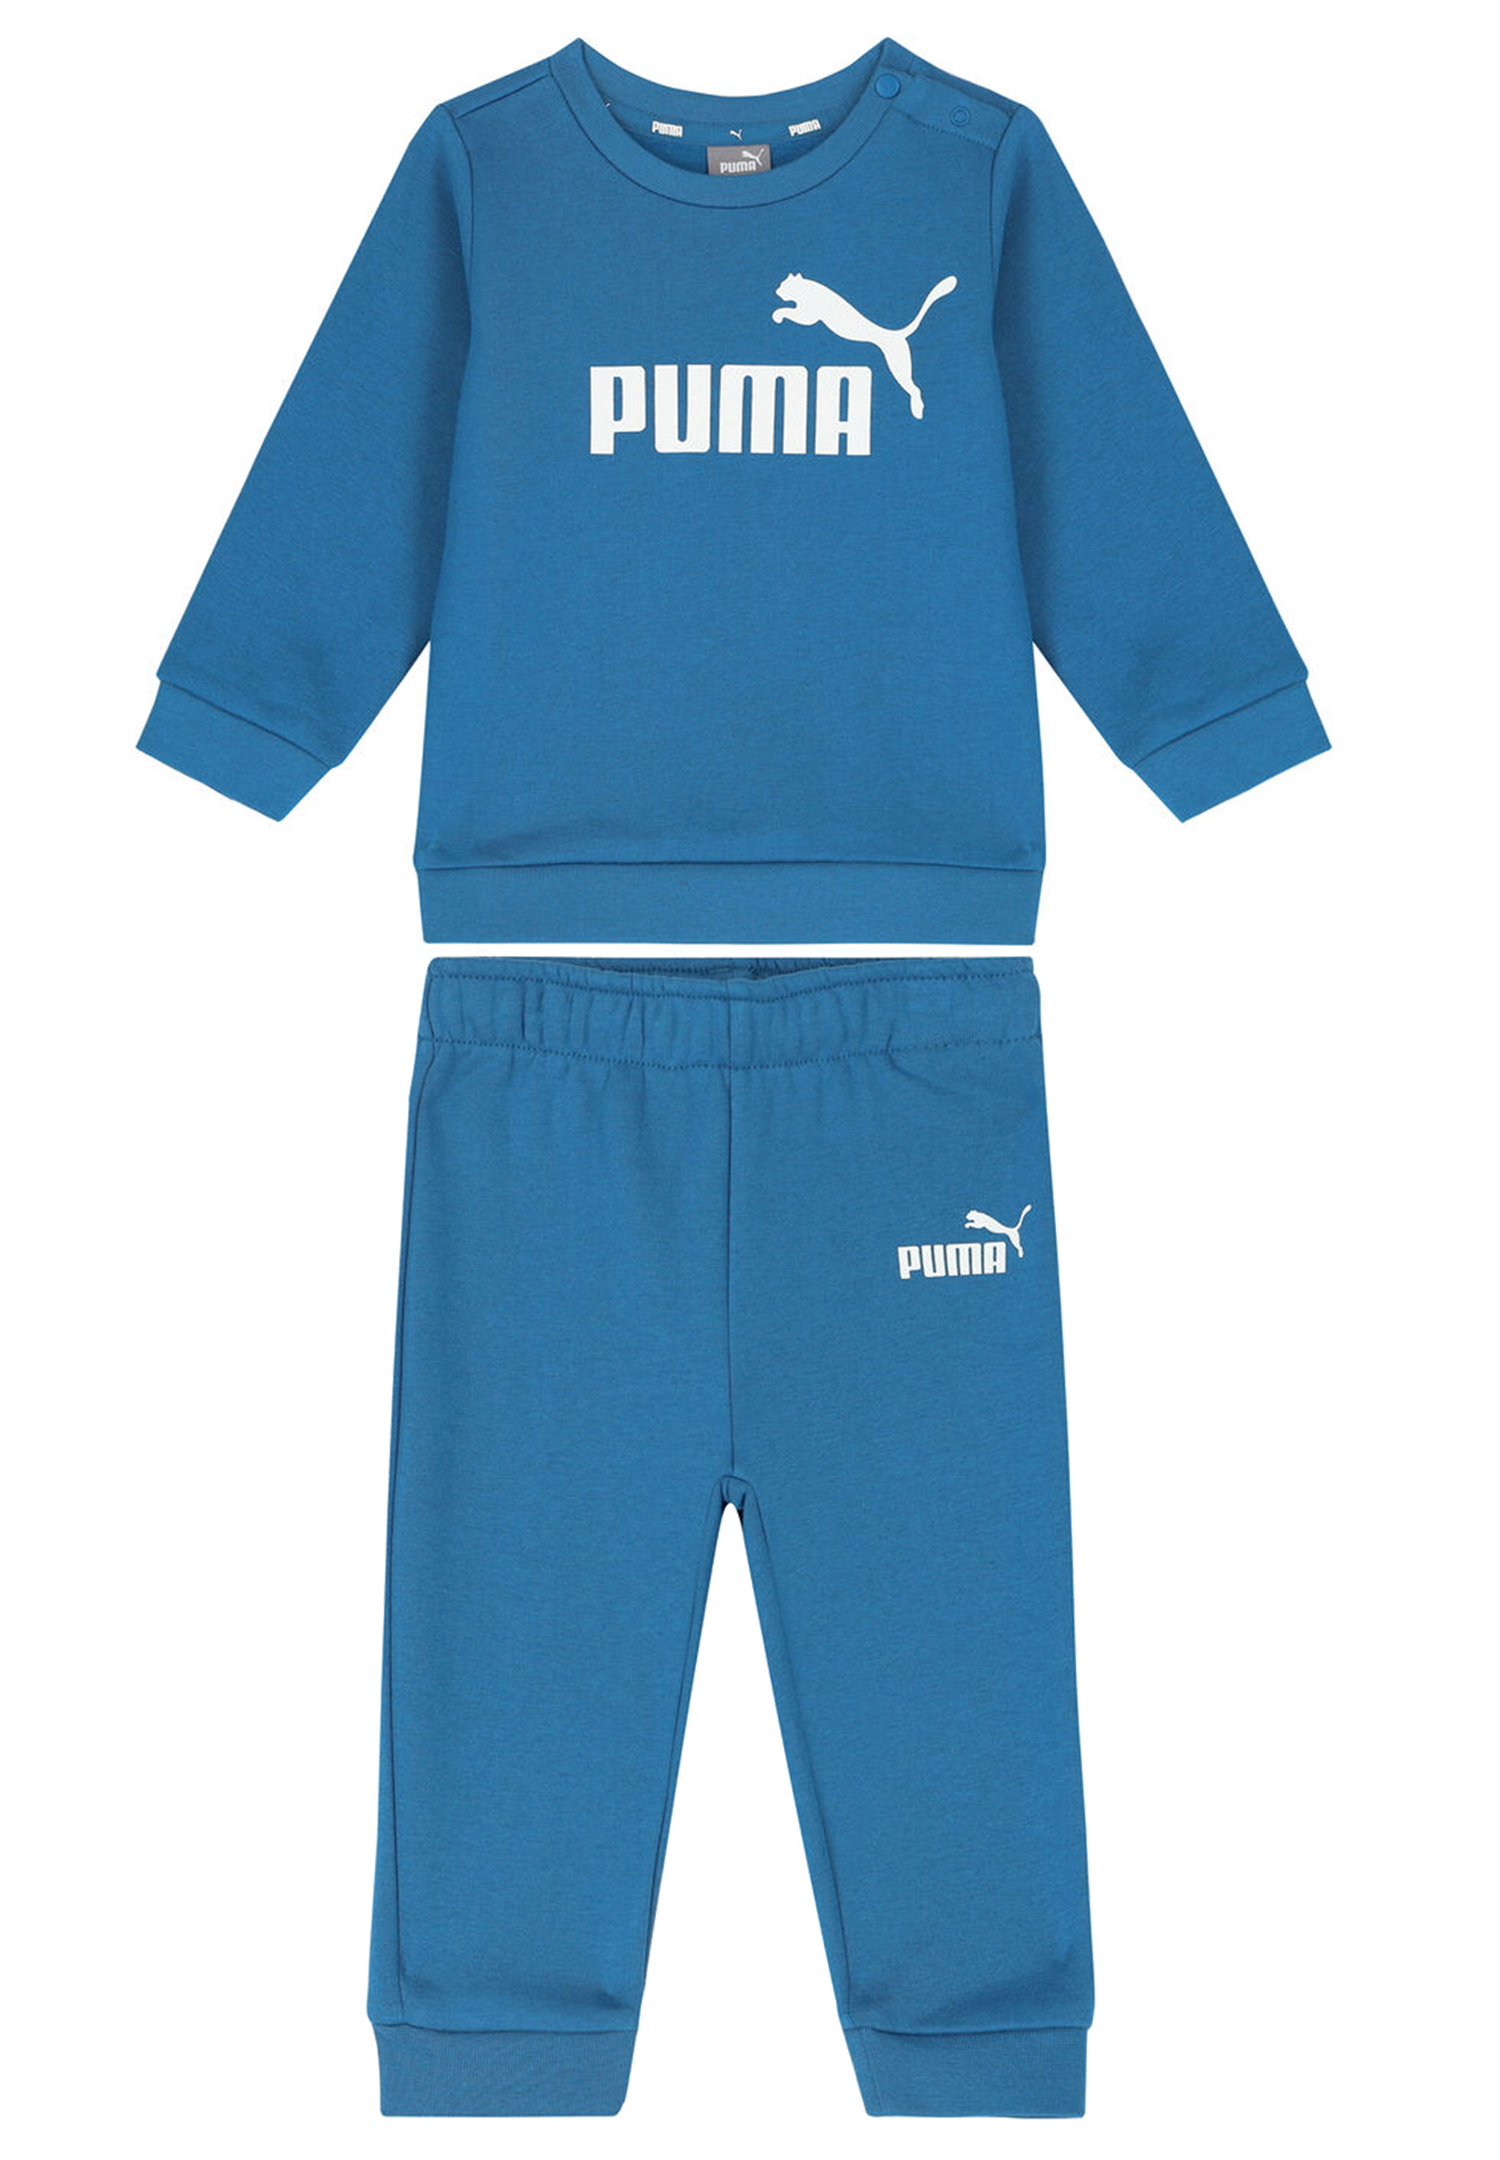 Puma MINICATS ESS Crew Jogger FL Trainingsanzug Sportanzug 846141 blau